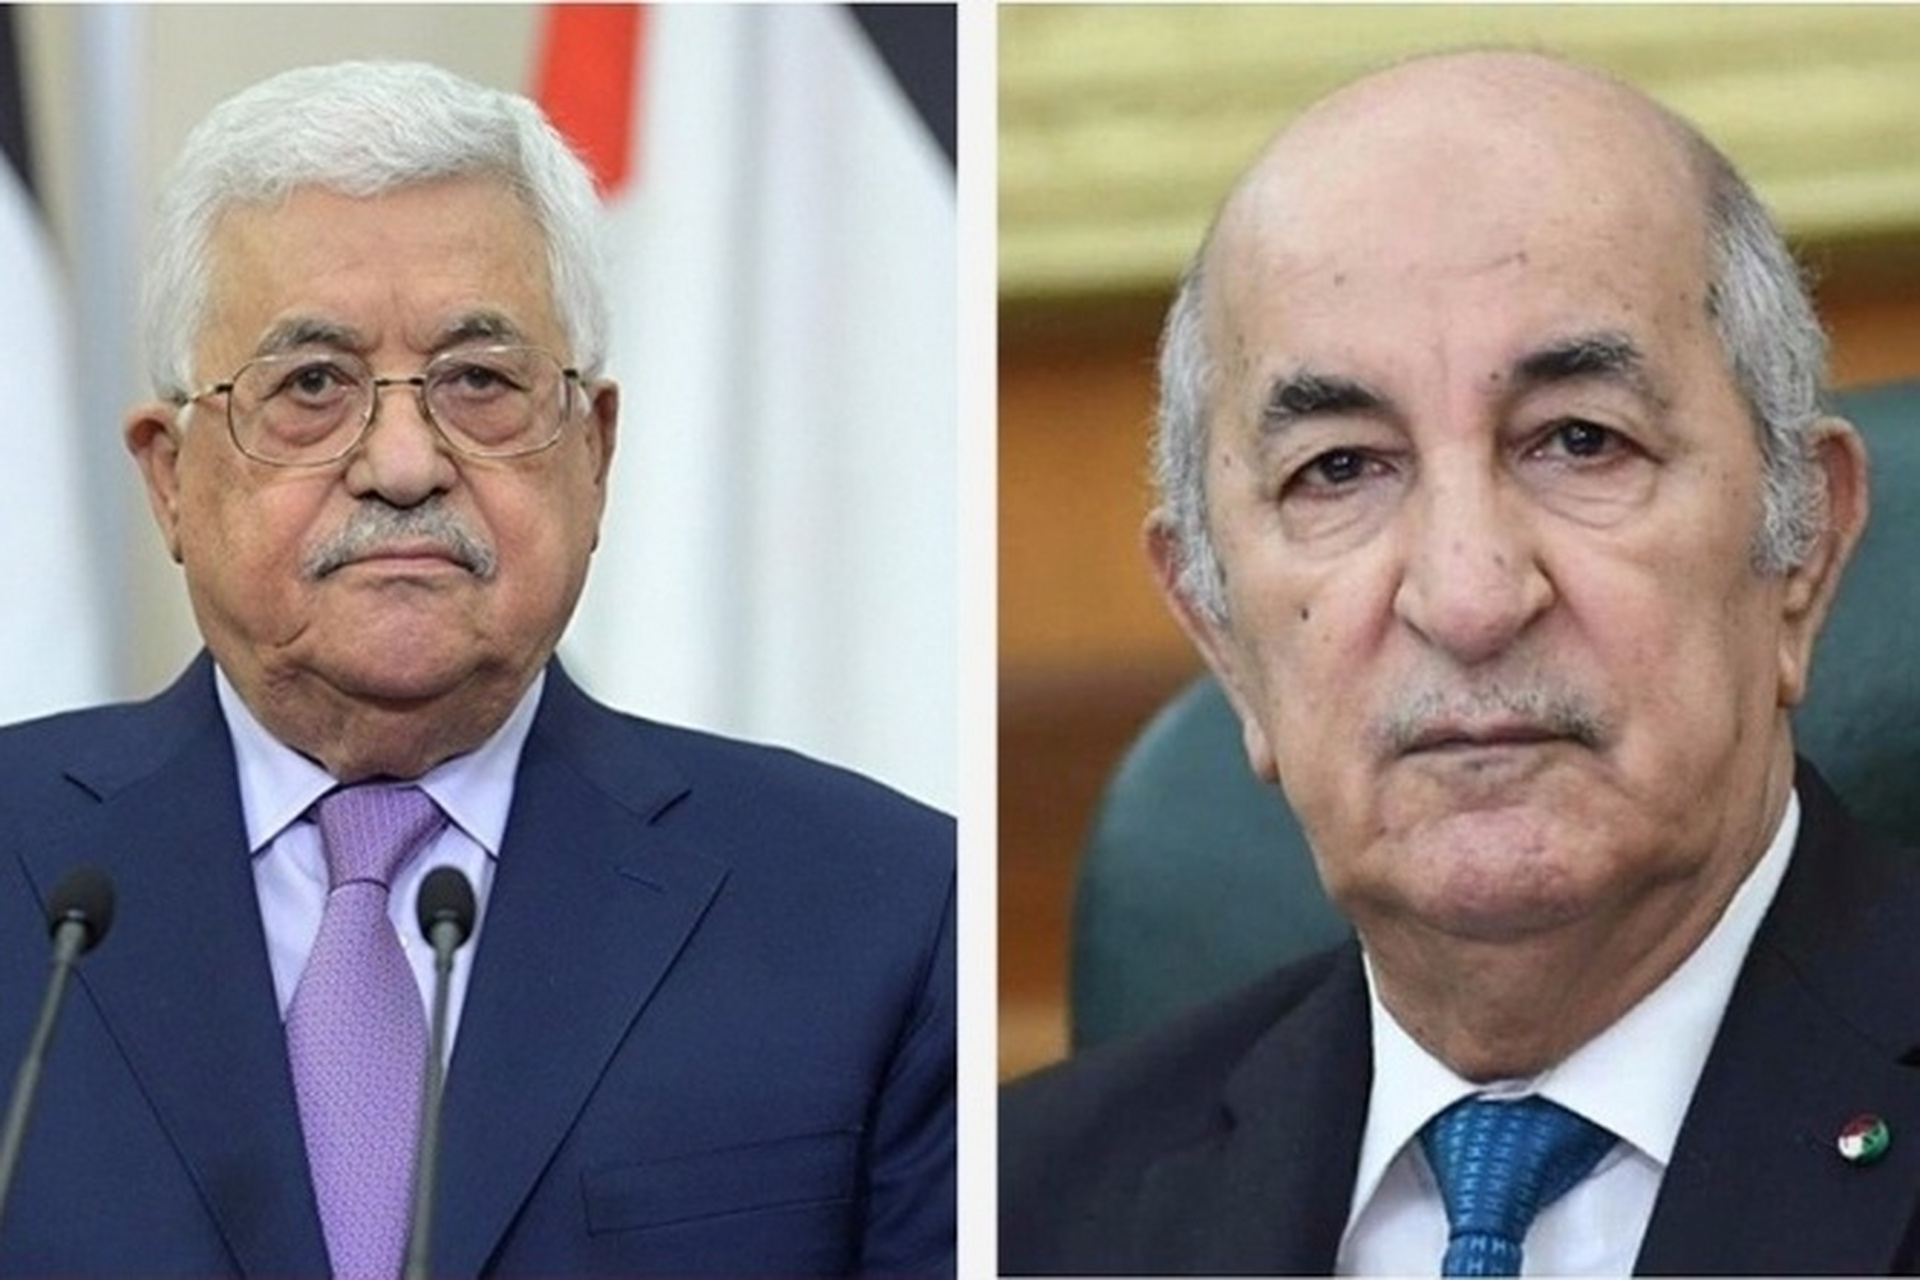 巴以局势再度紧张,阿尔及利亚总统特本与巴勒斯坦总统阿巴斯通电话